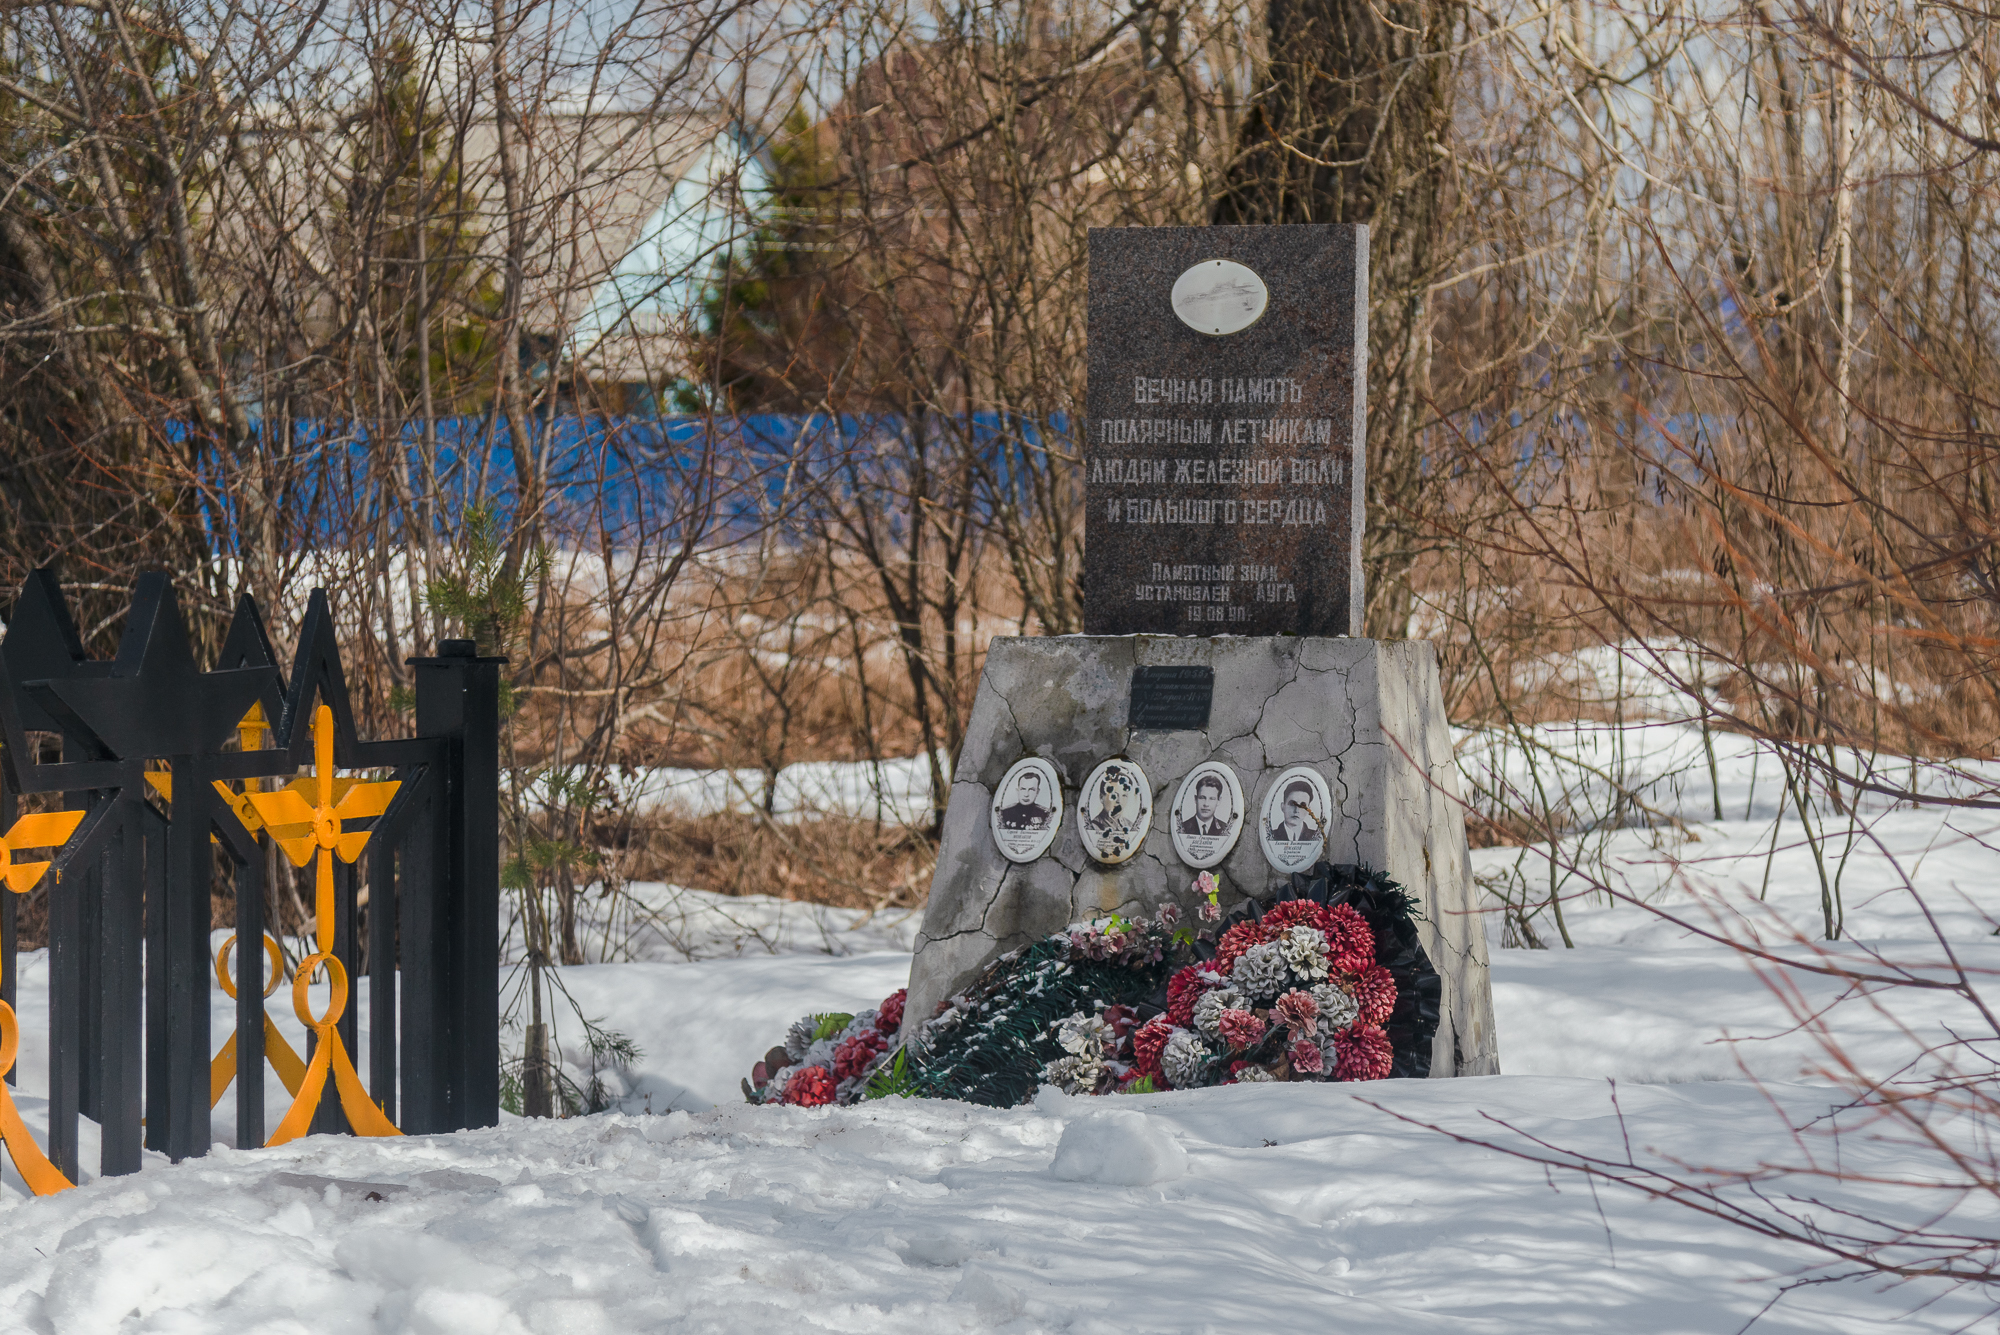 Татьяна вместе с классом прибирала территорию около этого памятника. Он посвящен памяти тех летчиков, которые во время Великой Отечественной войны базировались на местном аэродроме